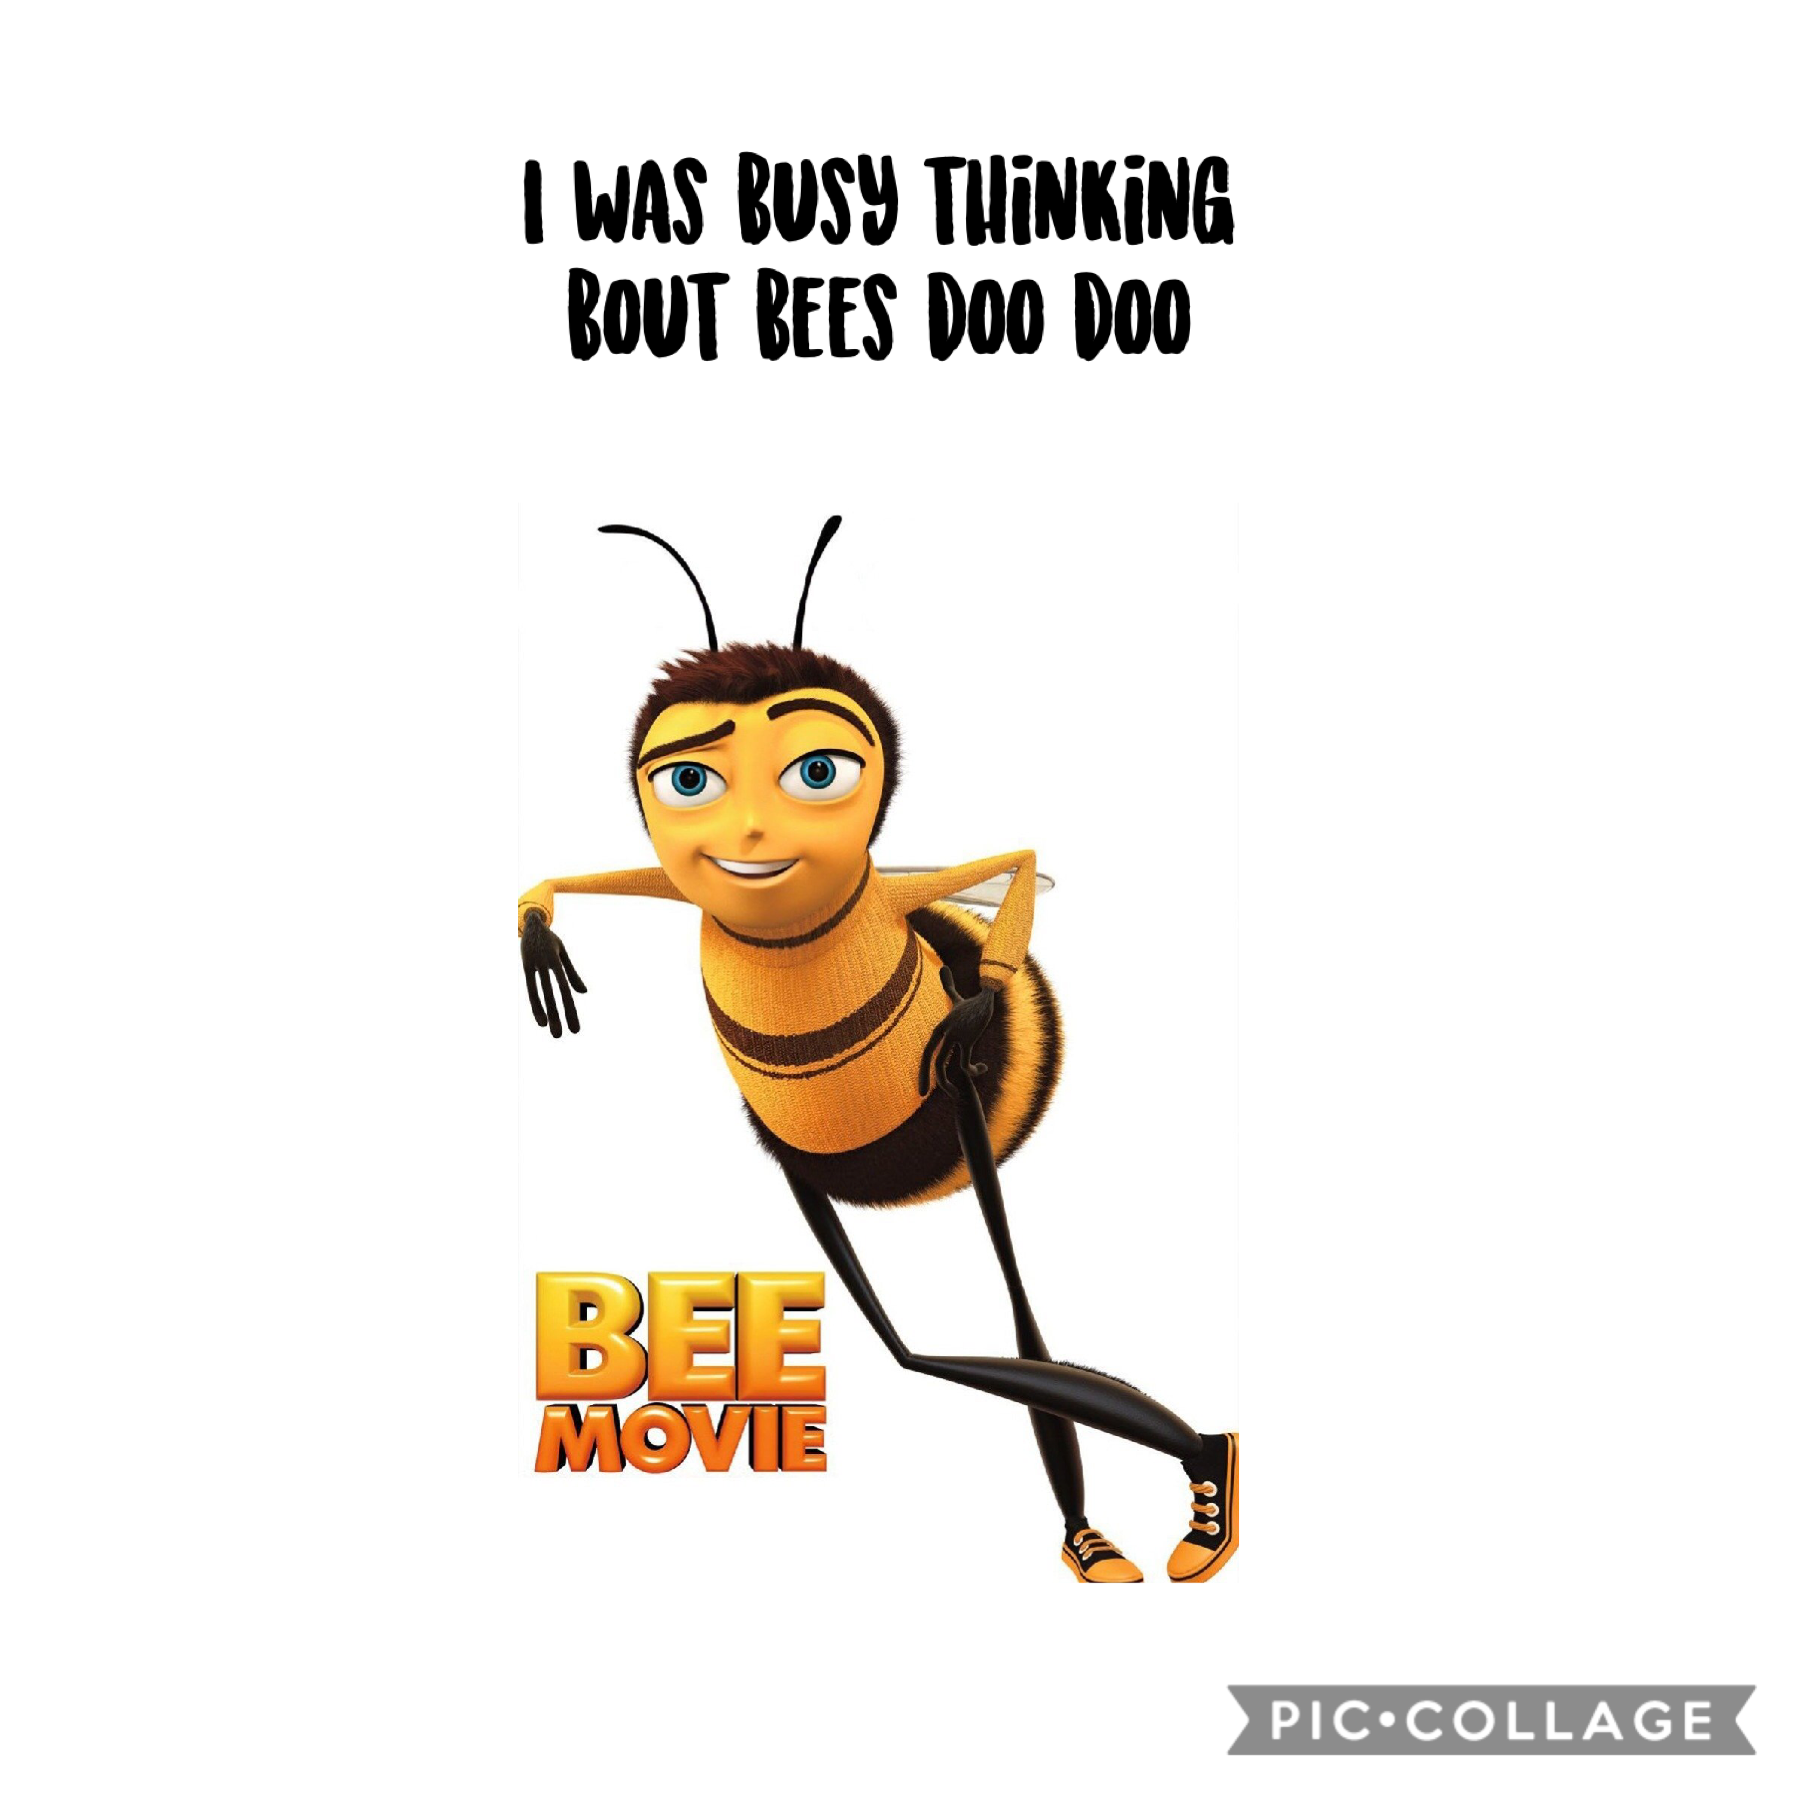 Bees doodoo 🙃🐝